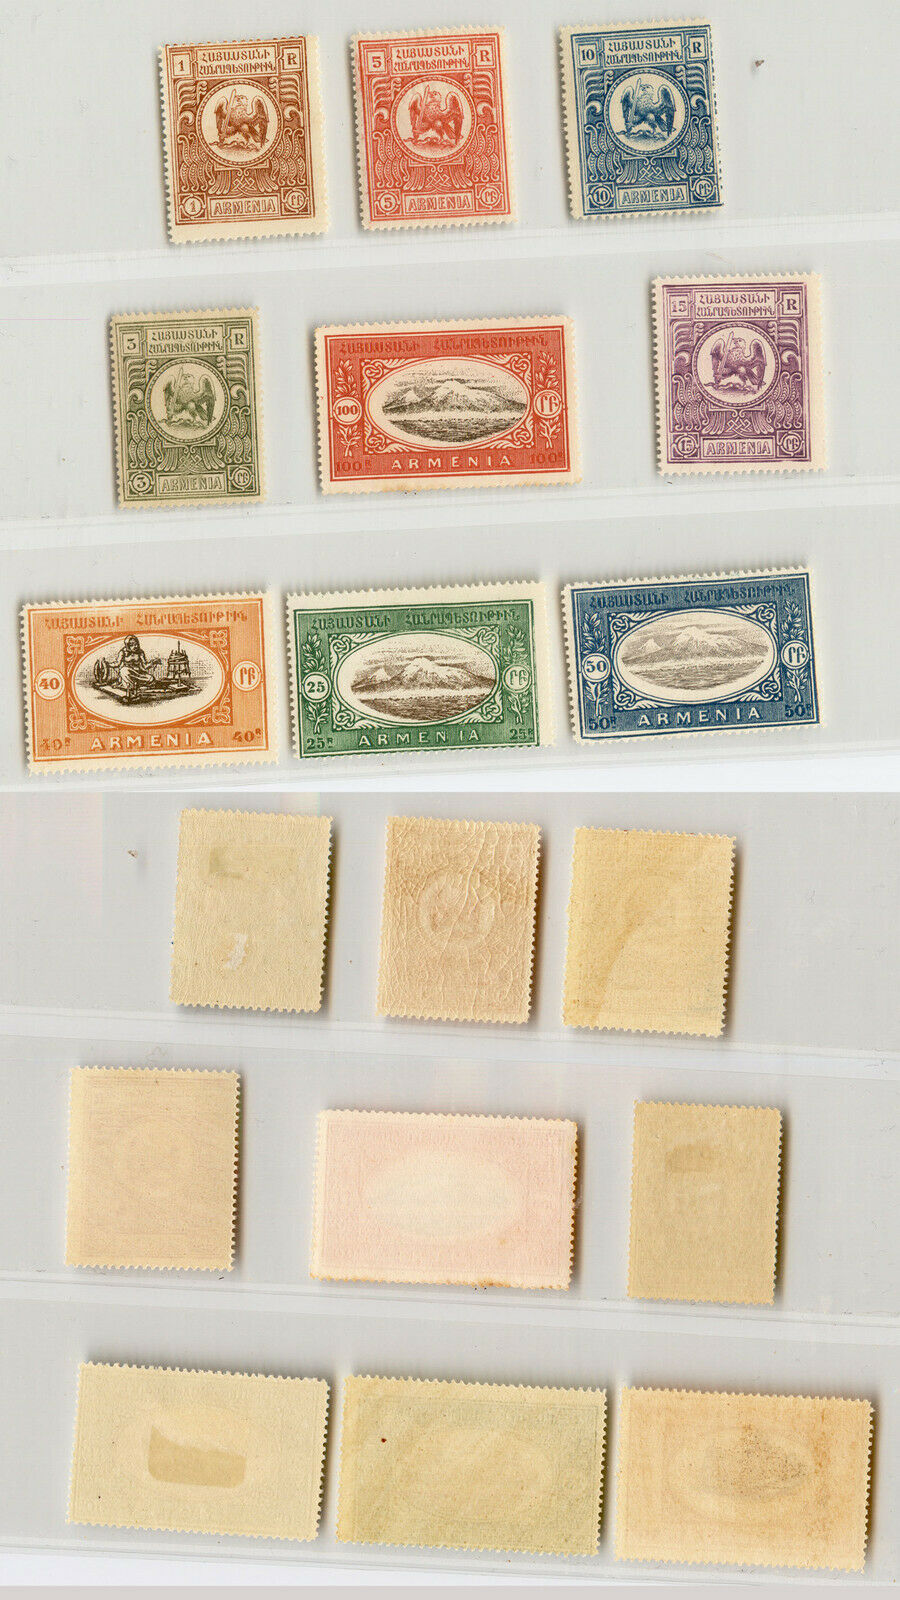 Armenia 1920 1 Ii 10 Mint . Rtb4907